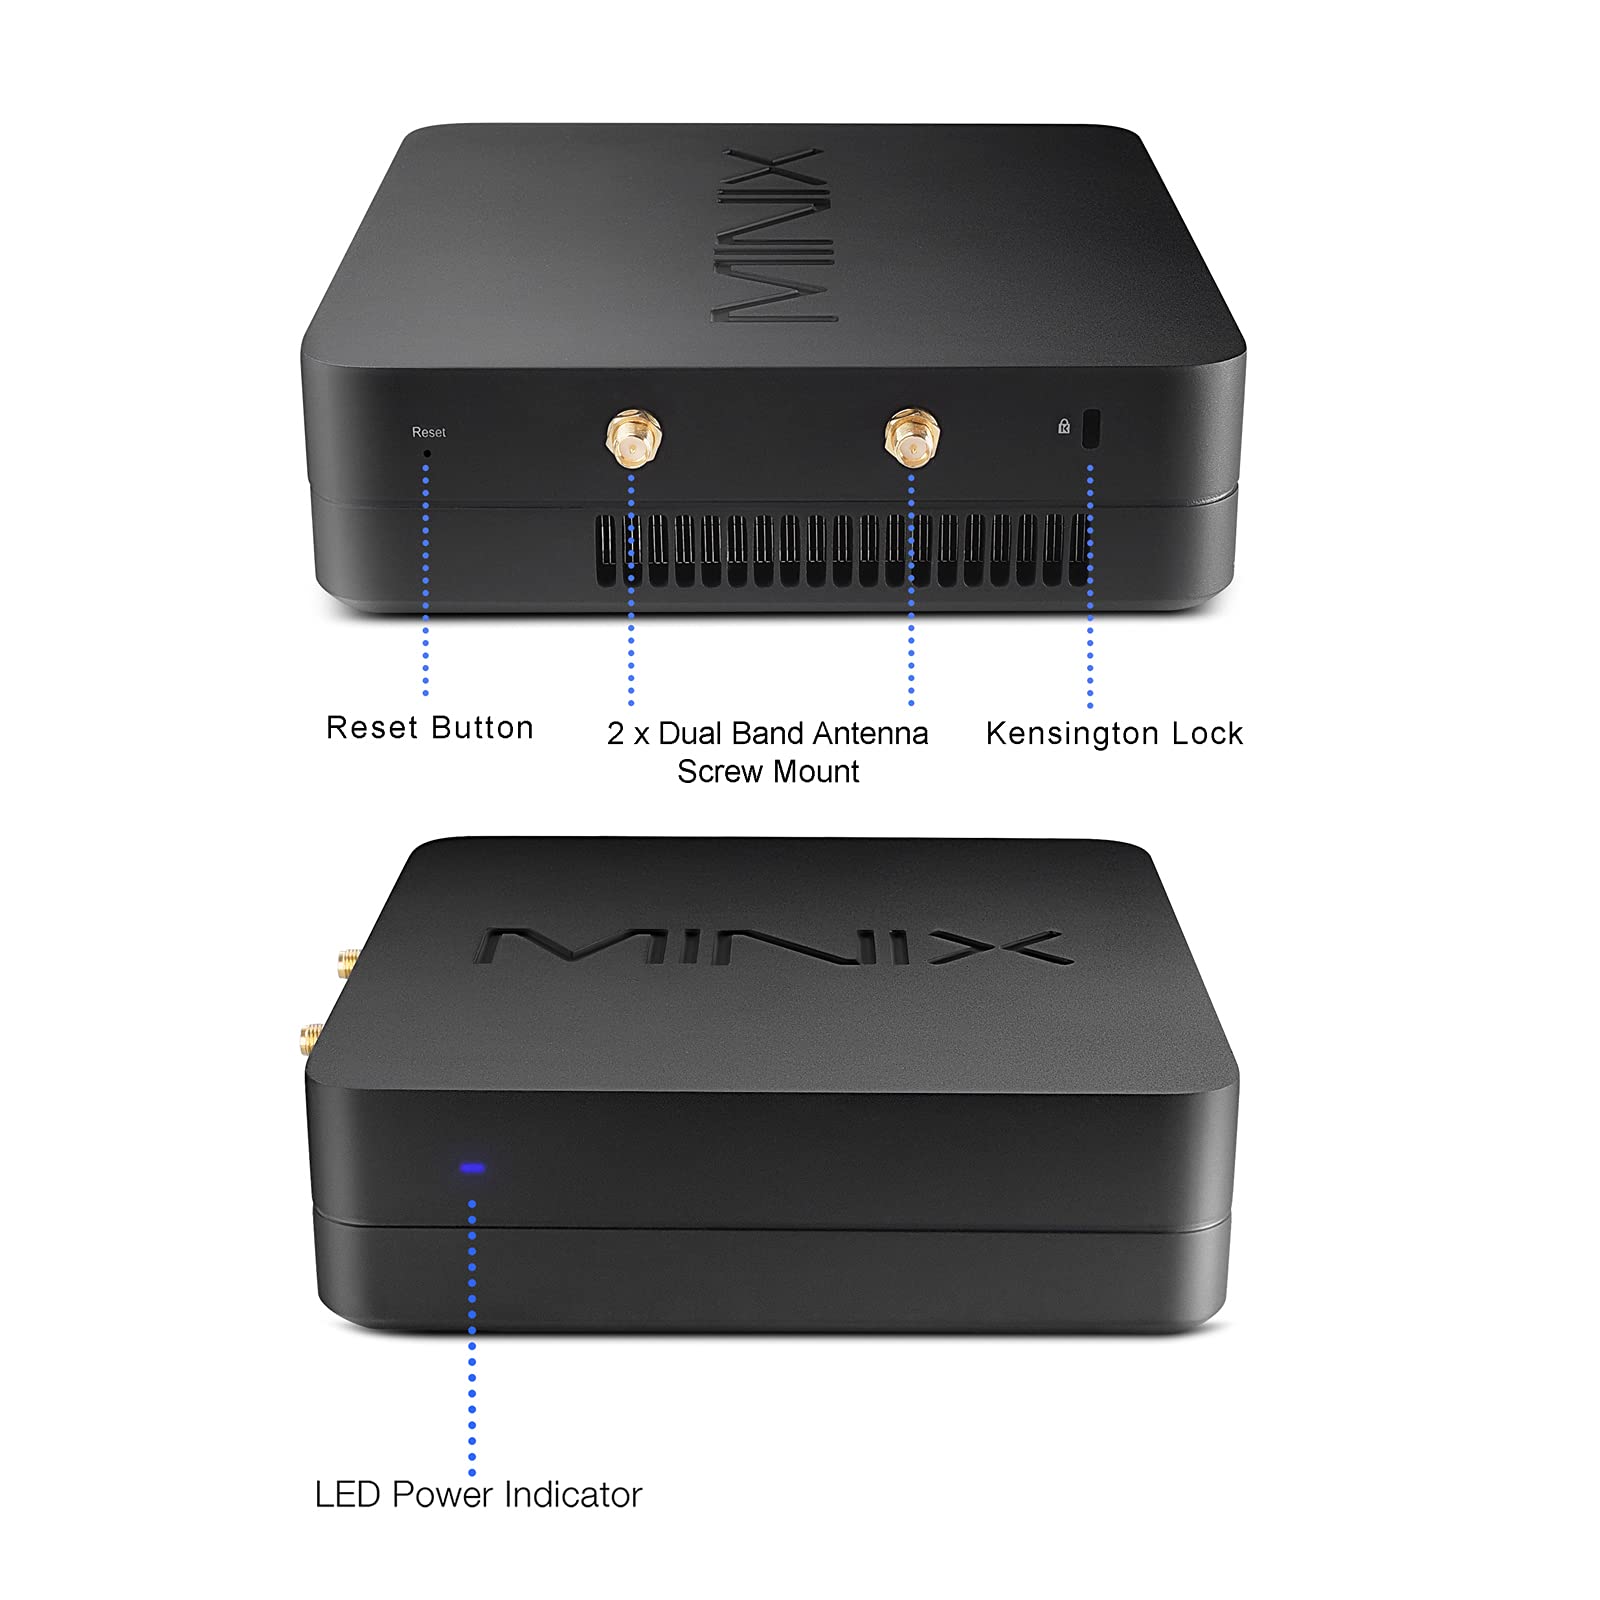 MINIX NGC-5, 8GB/256GB M.2 NVMe SSD Mini Computer, Triple 4K @ 60Hz Display/HDMI 2.0/ USB-C/DP/2xGigabit Ethernet/4USB 3.1. Support 4G LTE, SSD (SATA), Auto Power On. （ i5-8279U/Windows 10 Pro